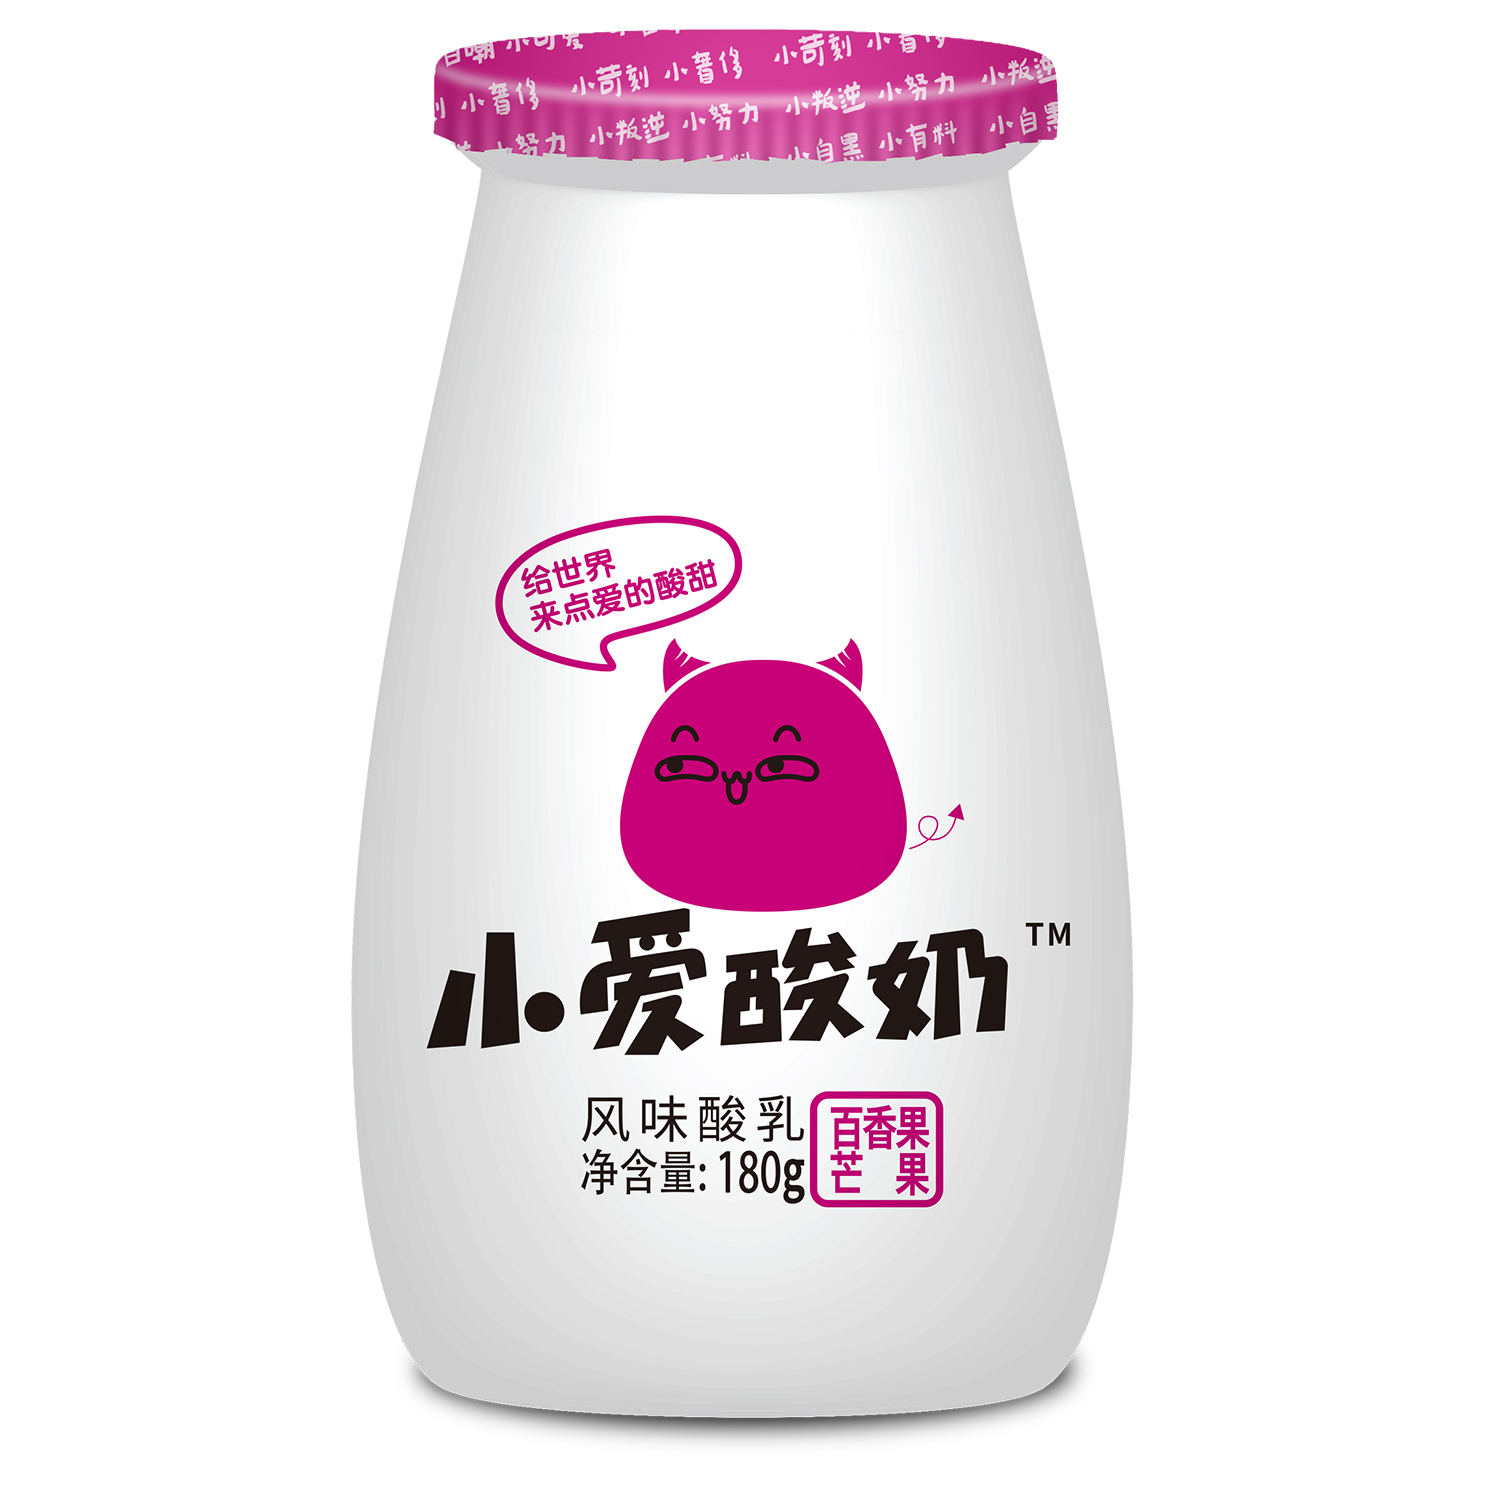 小爱酸奶-百香果芒果味